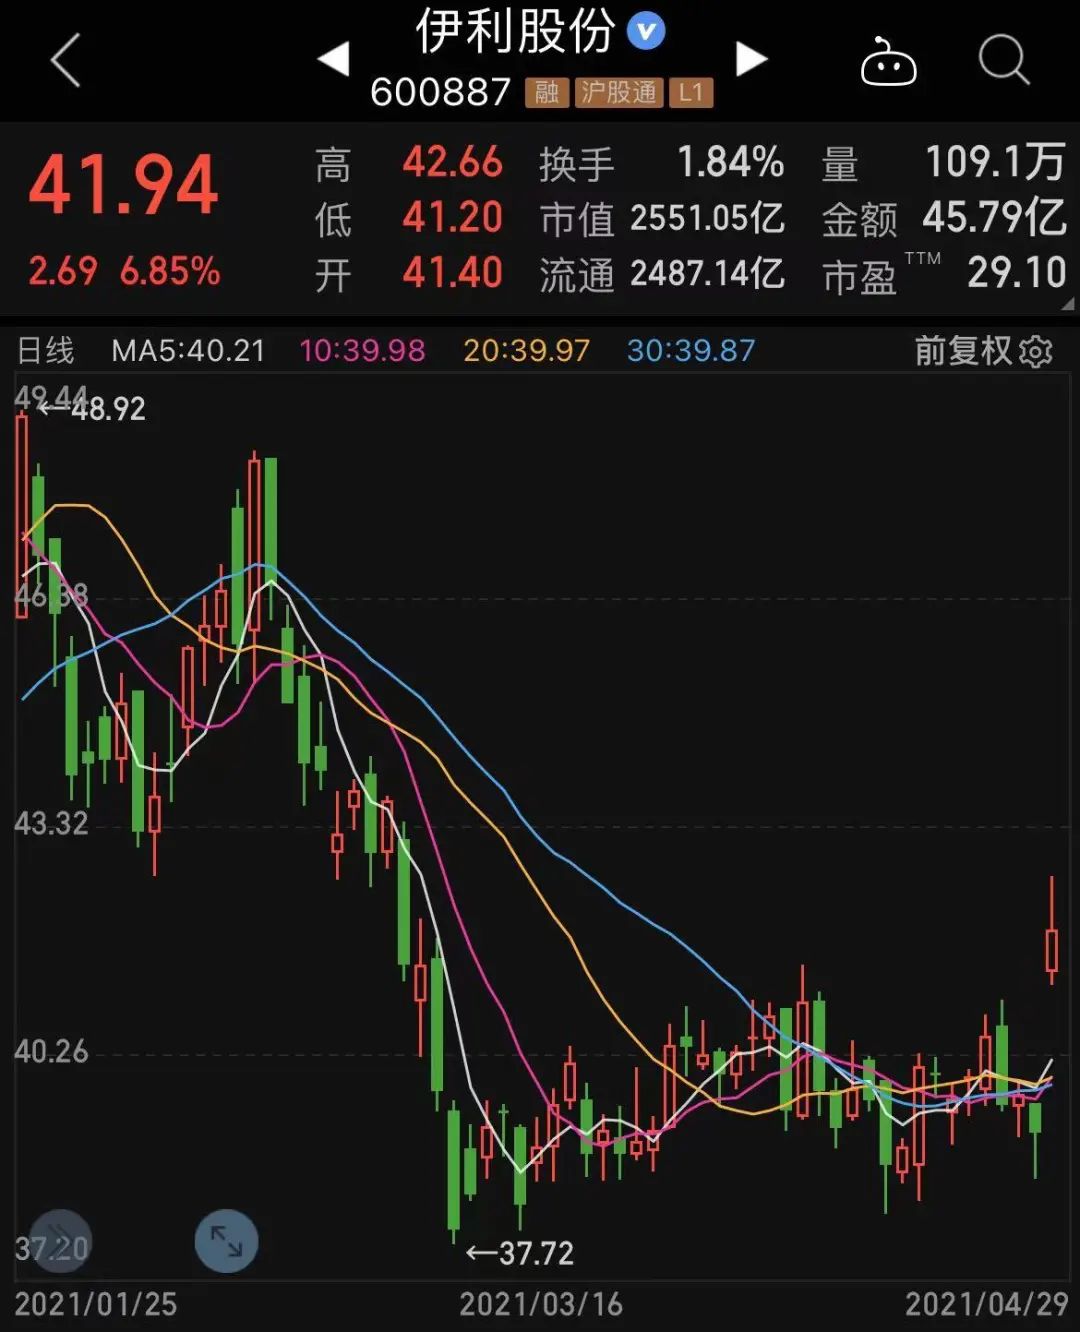 上海机场惊爆亏损,中报高增长低估值股票揭秘(附名单)